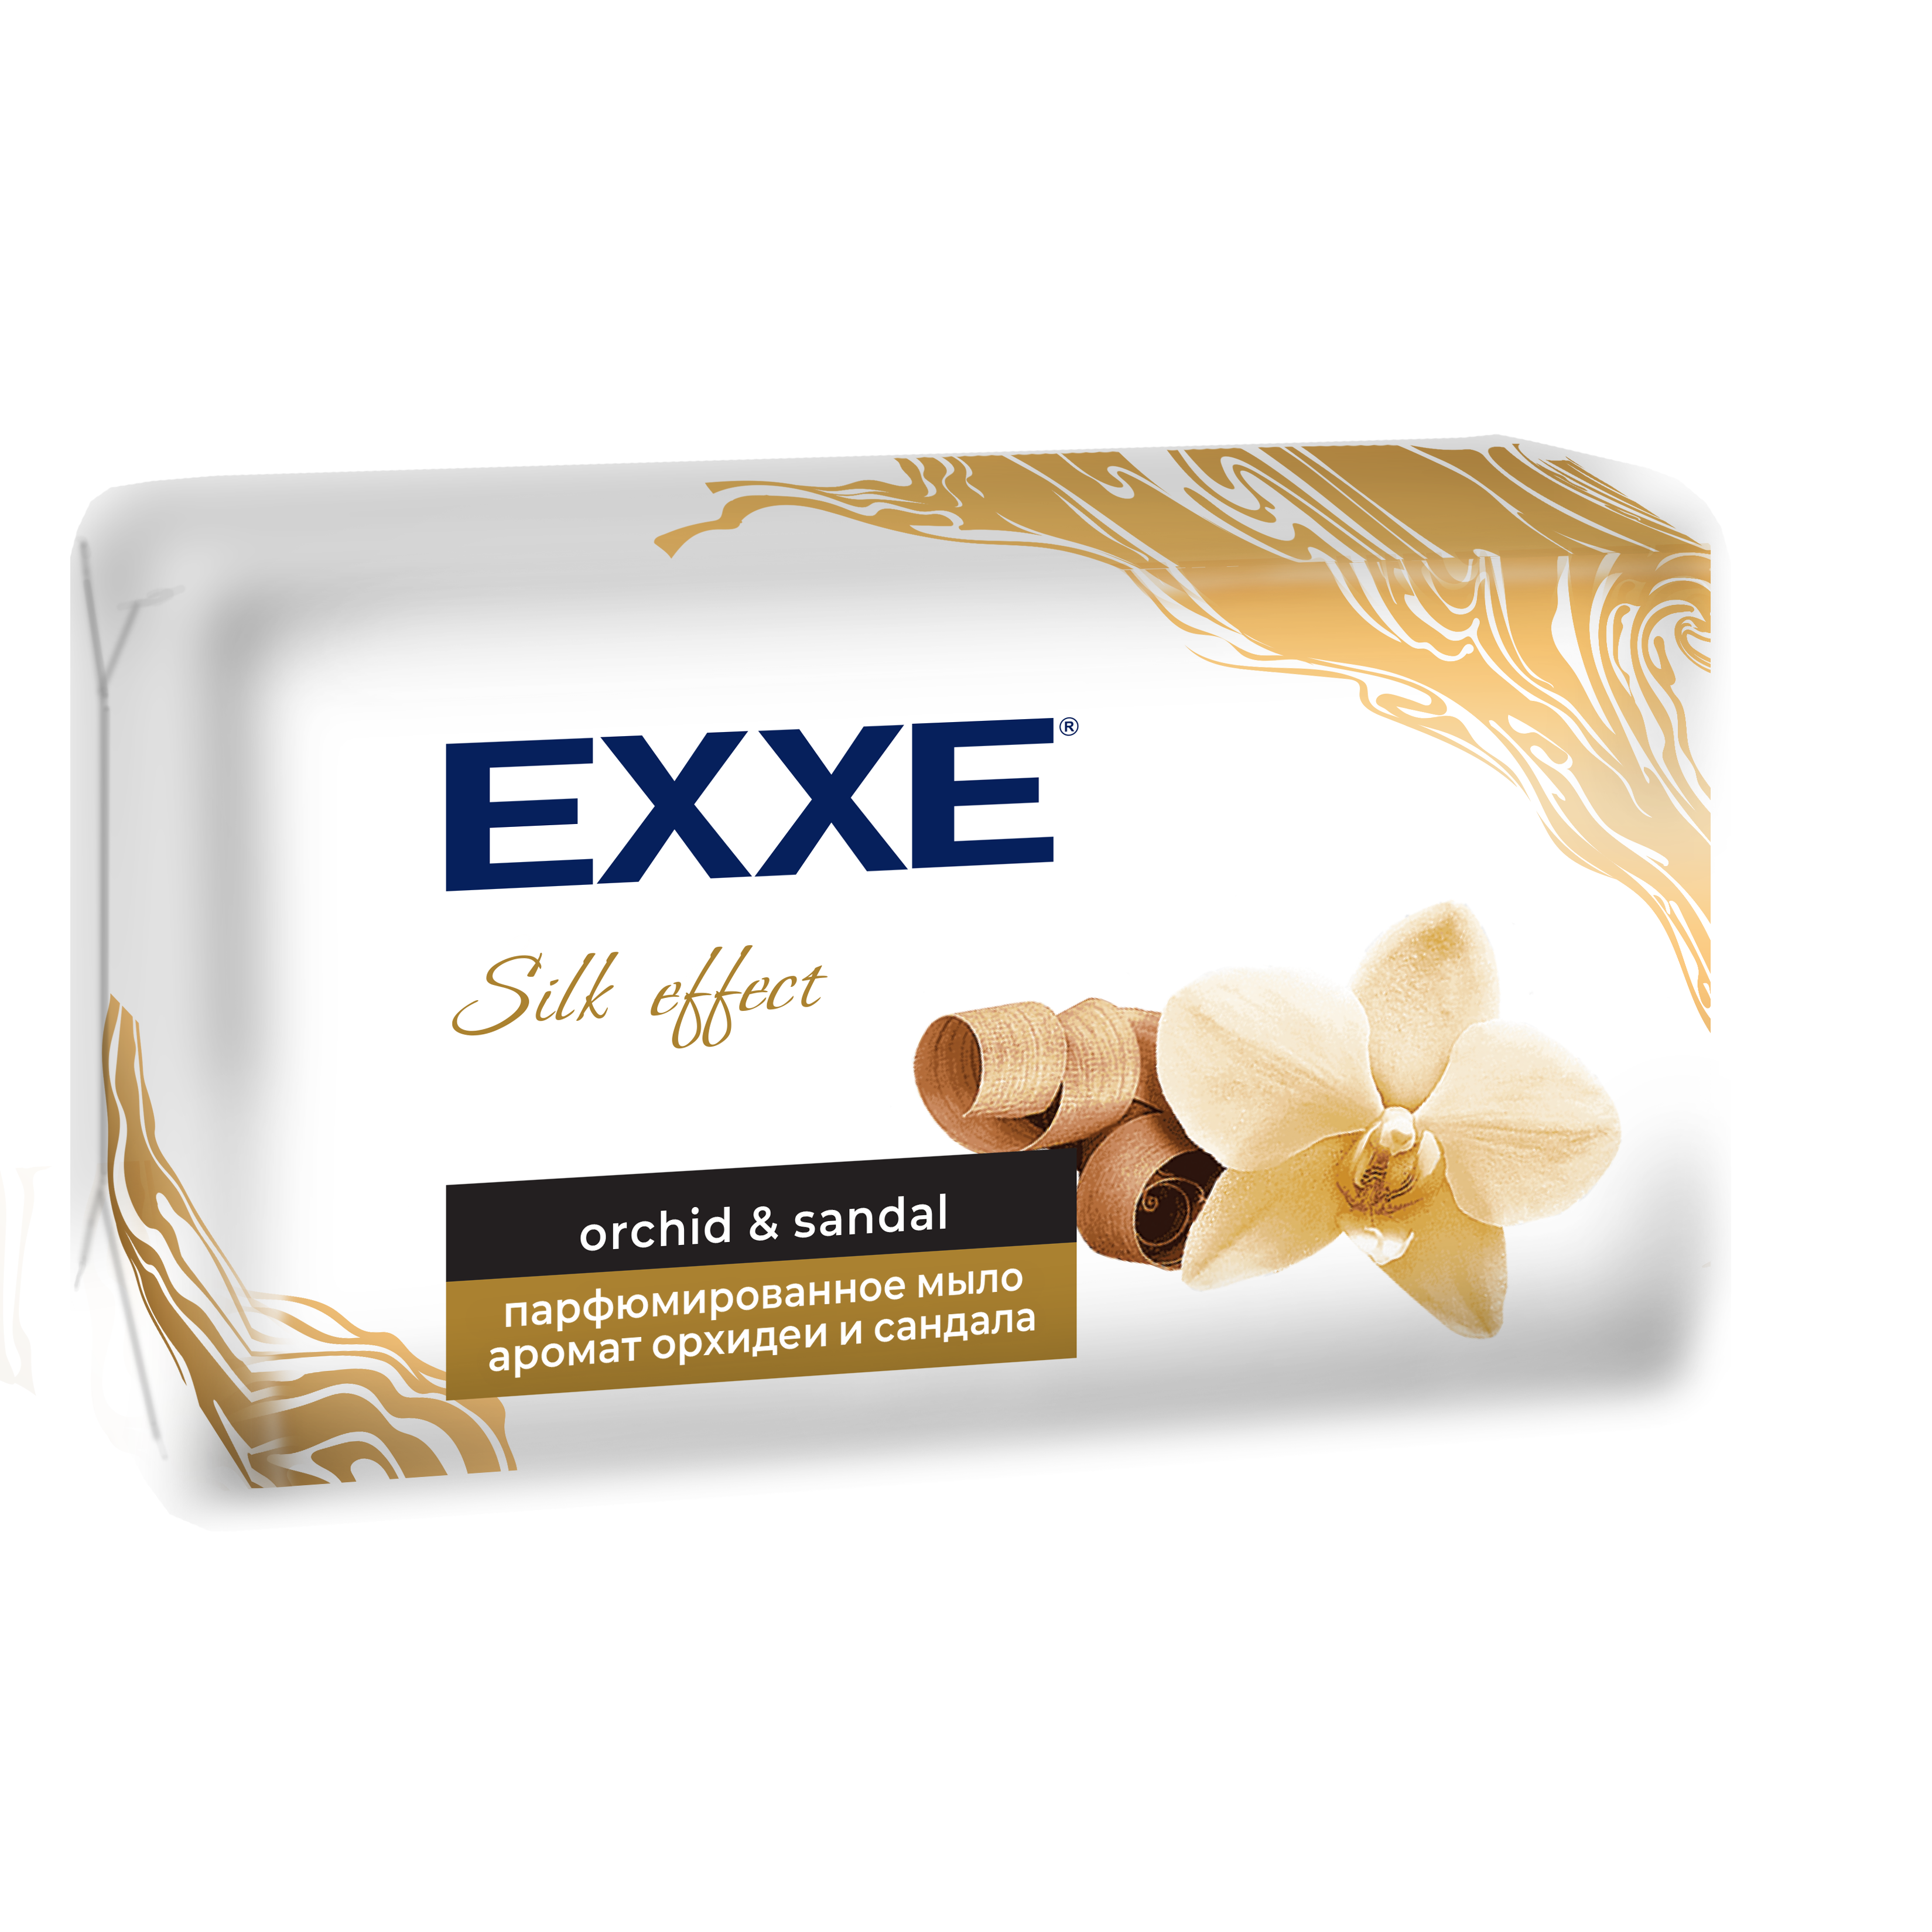 Мыло парфюмированное EXXE Silk Effect аромат Орхидеи и Сандала, 140 г мыло натуральное парфюмированное с ароматом new nuance